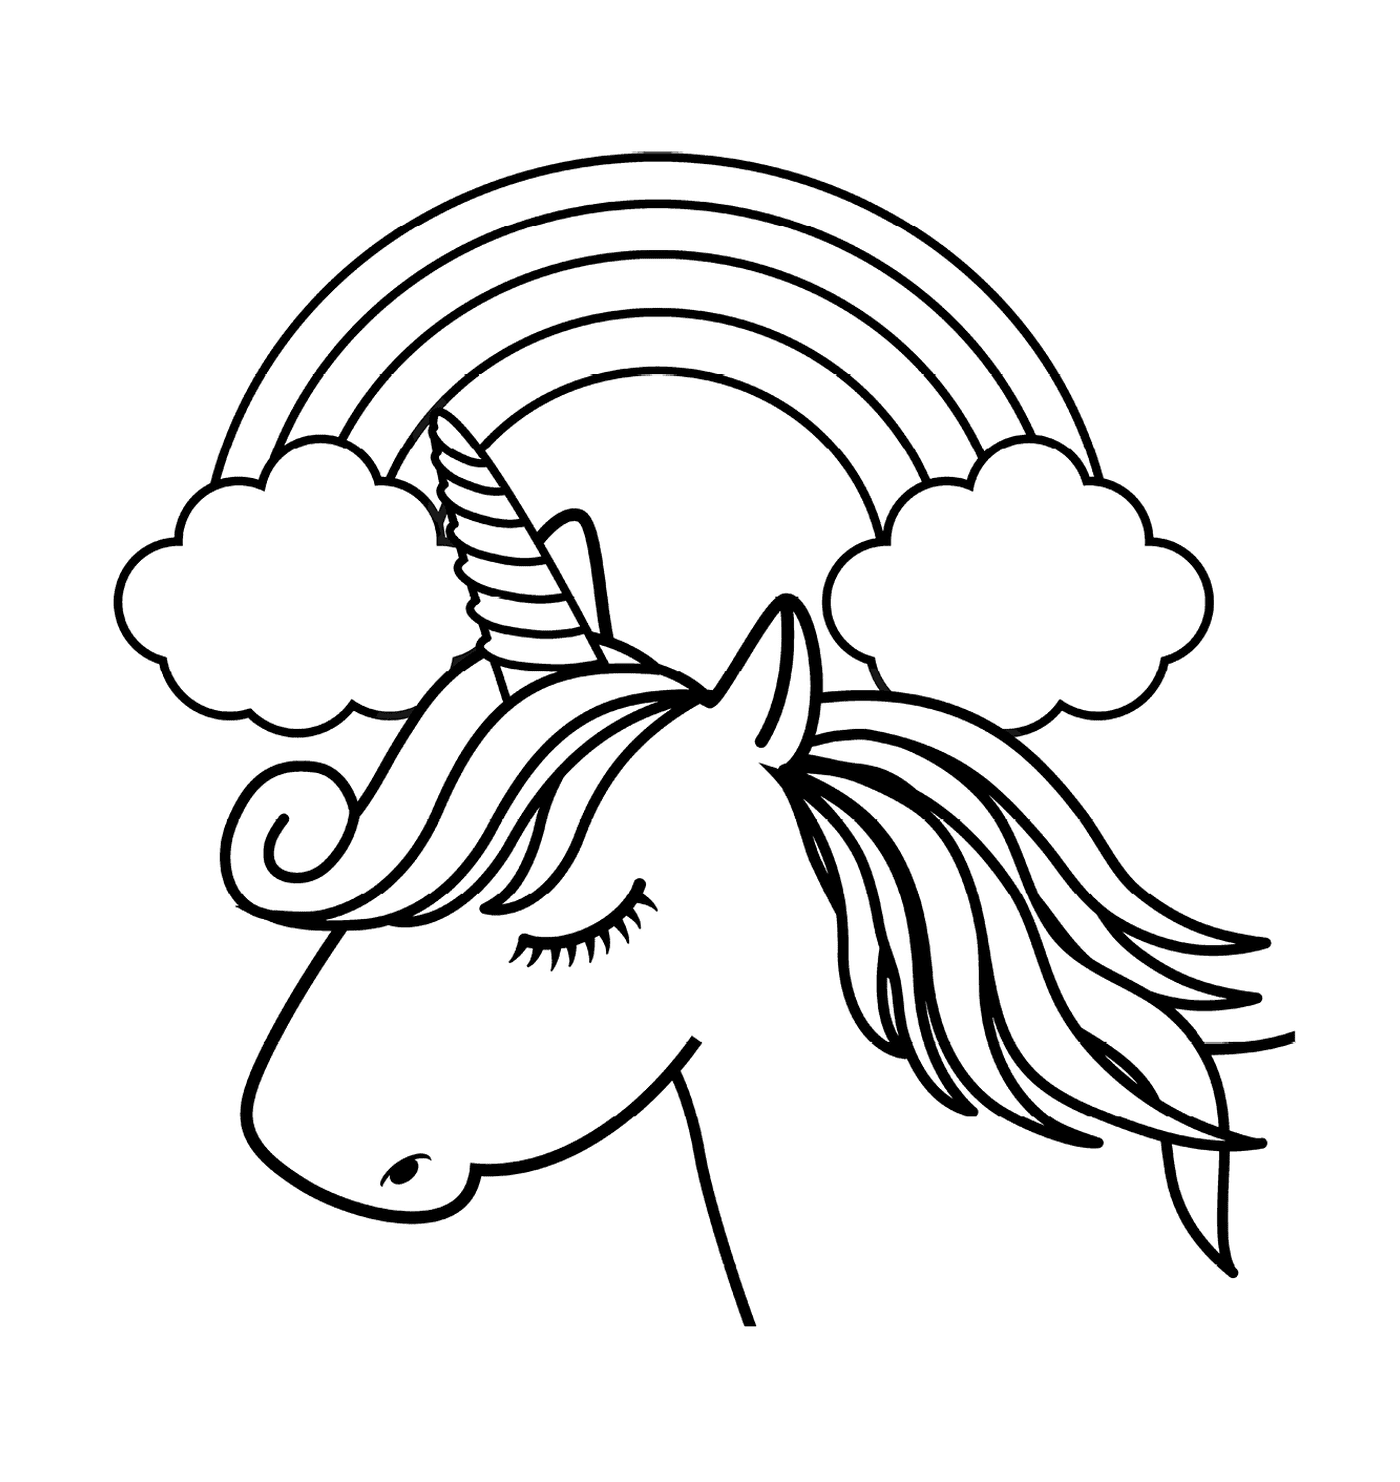 coloriage licorne blanche avec une corne unique devant un arc en ciel